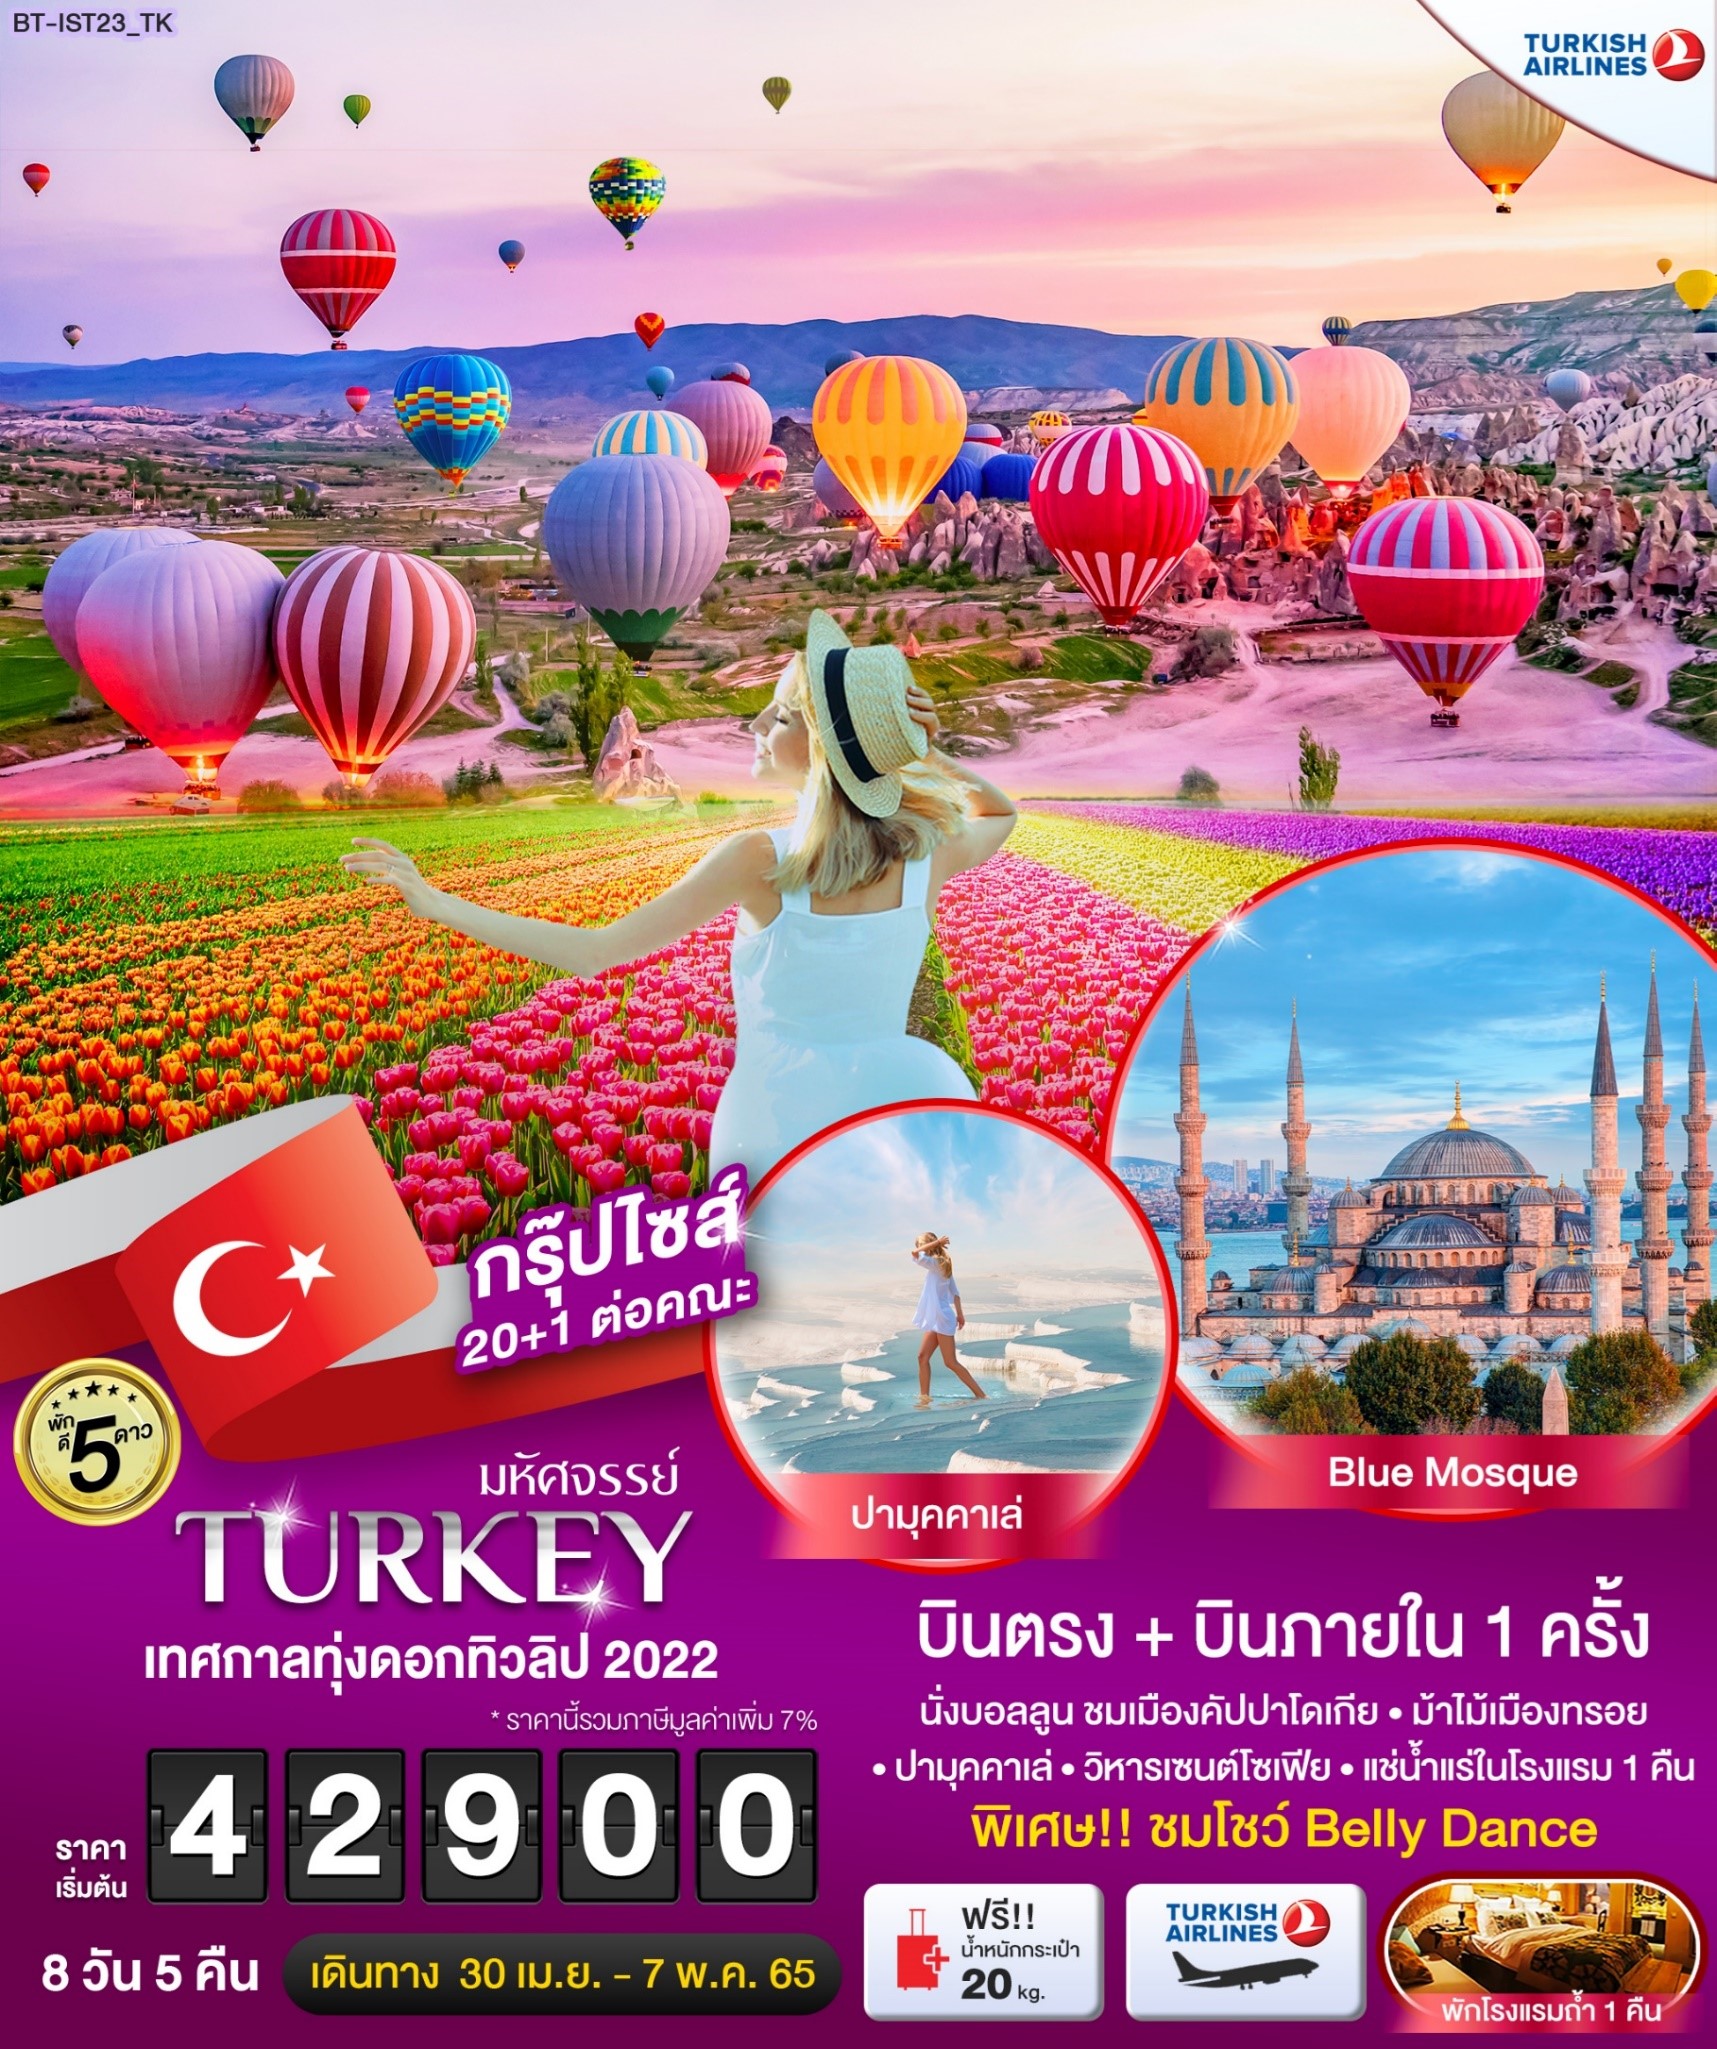 ทัวร์ตุรกี มหัศจรรย์ TURKEY เทศกาลทุ่งดอกทิวลิป 2022